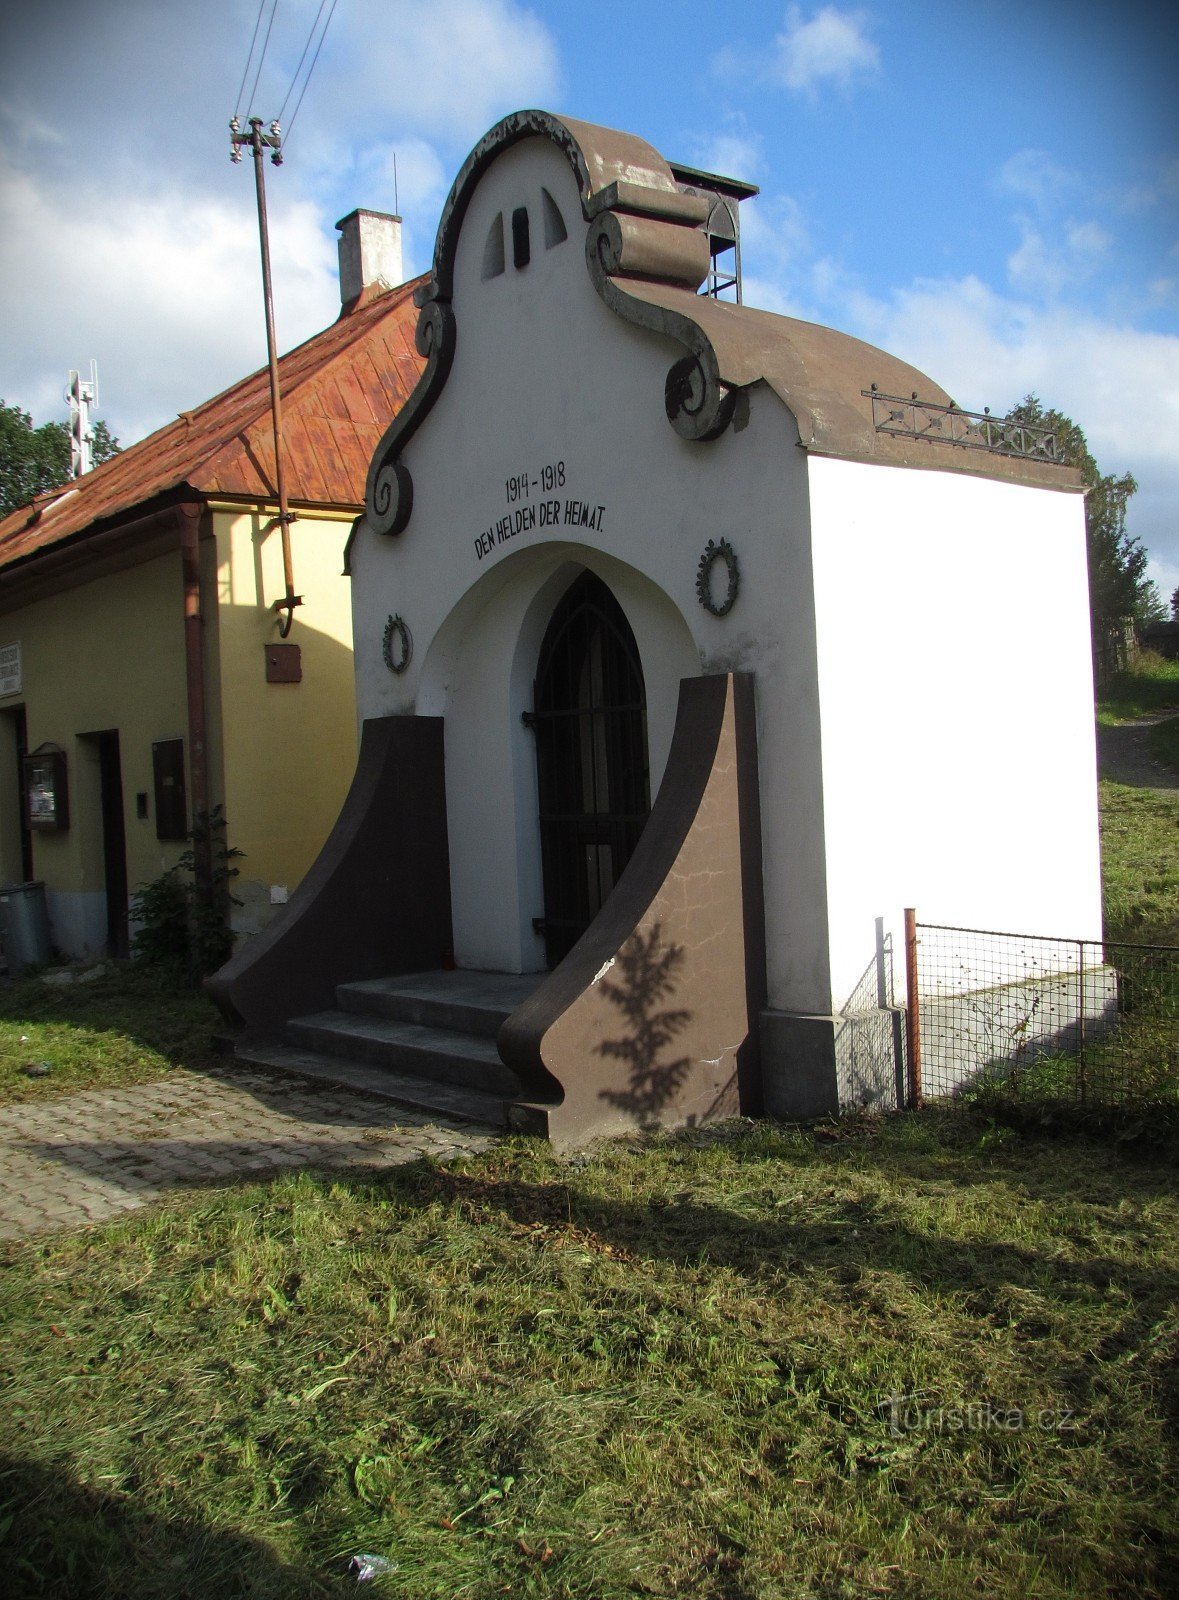 Rýmařov - tháp chuông ở Janovice